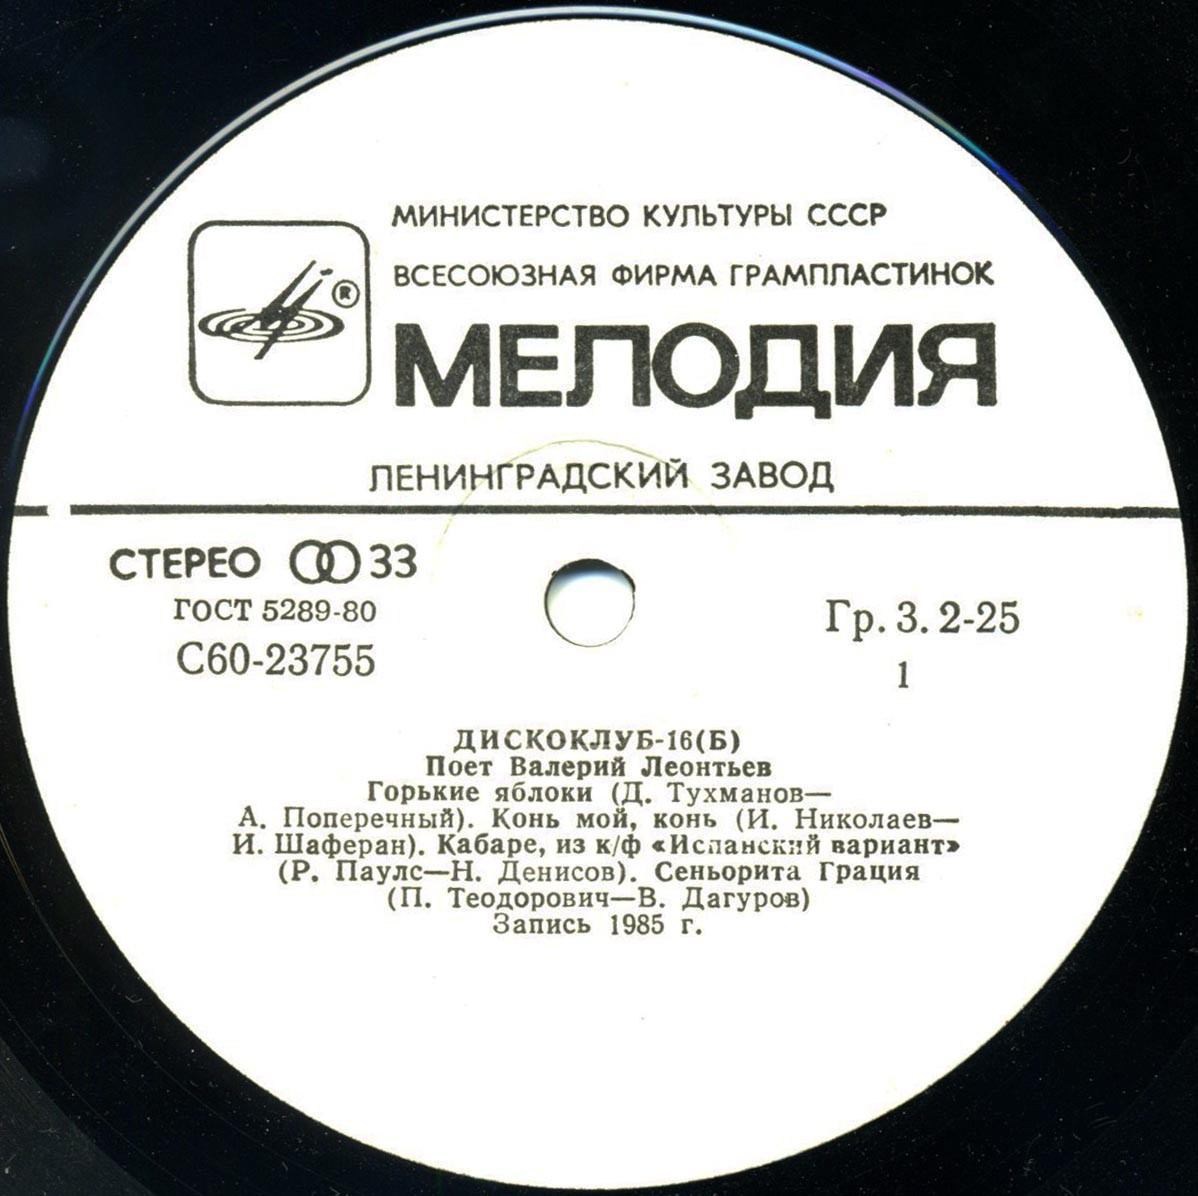 Дискоклуб-16 (Б). Поет Валерий ЛЕОНТЬЕВ